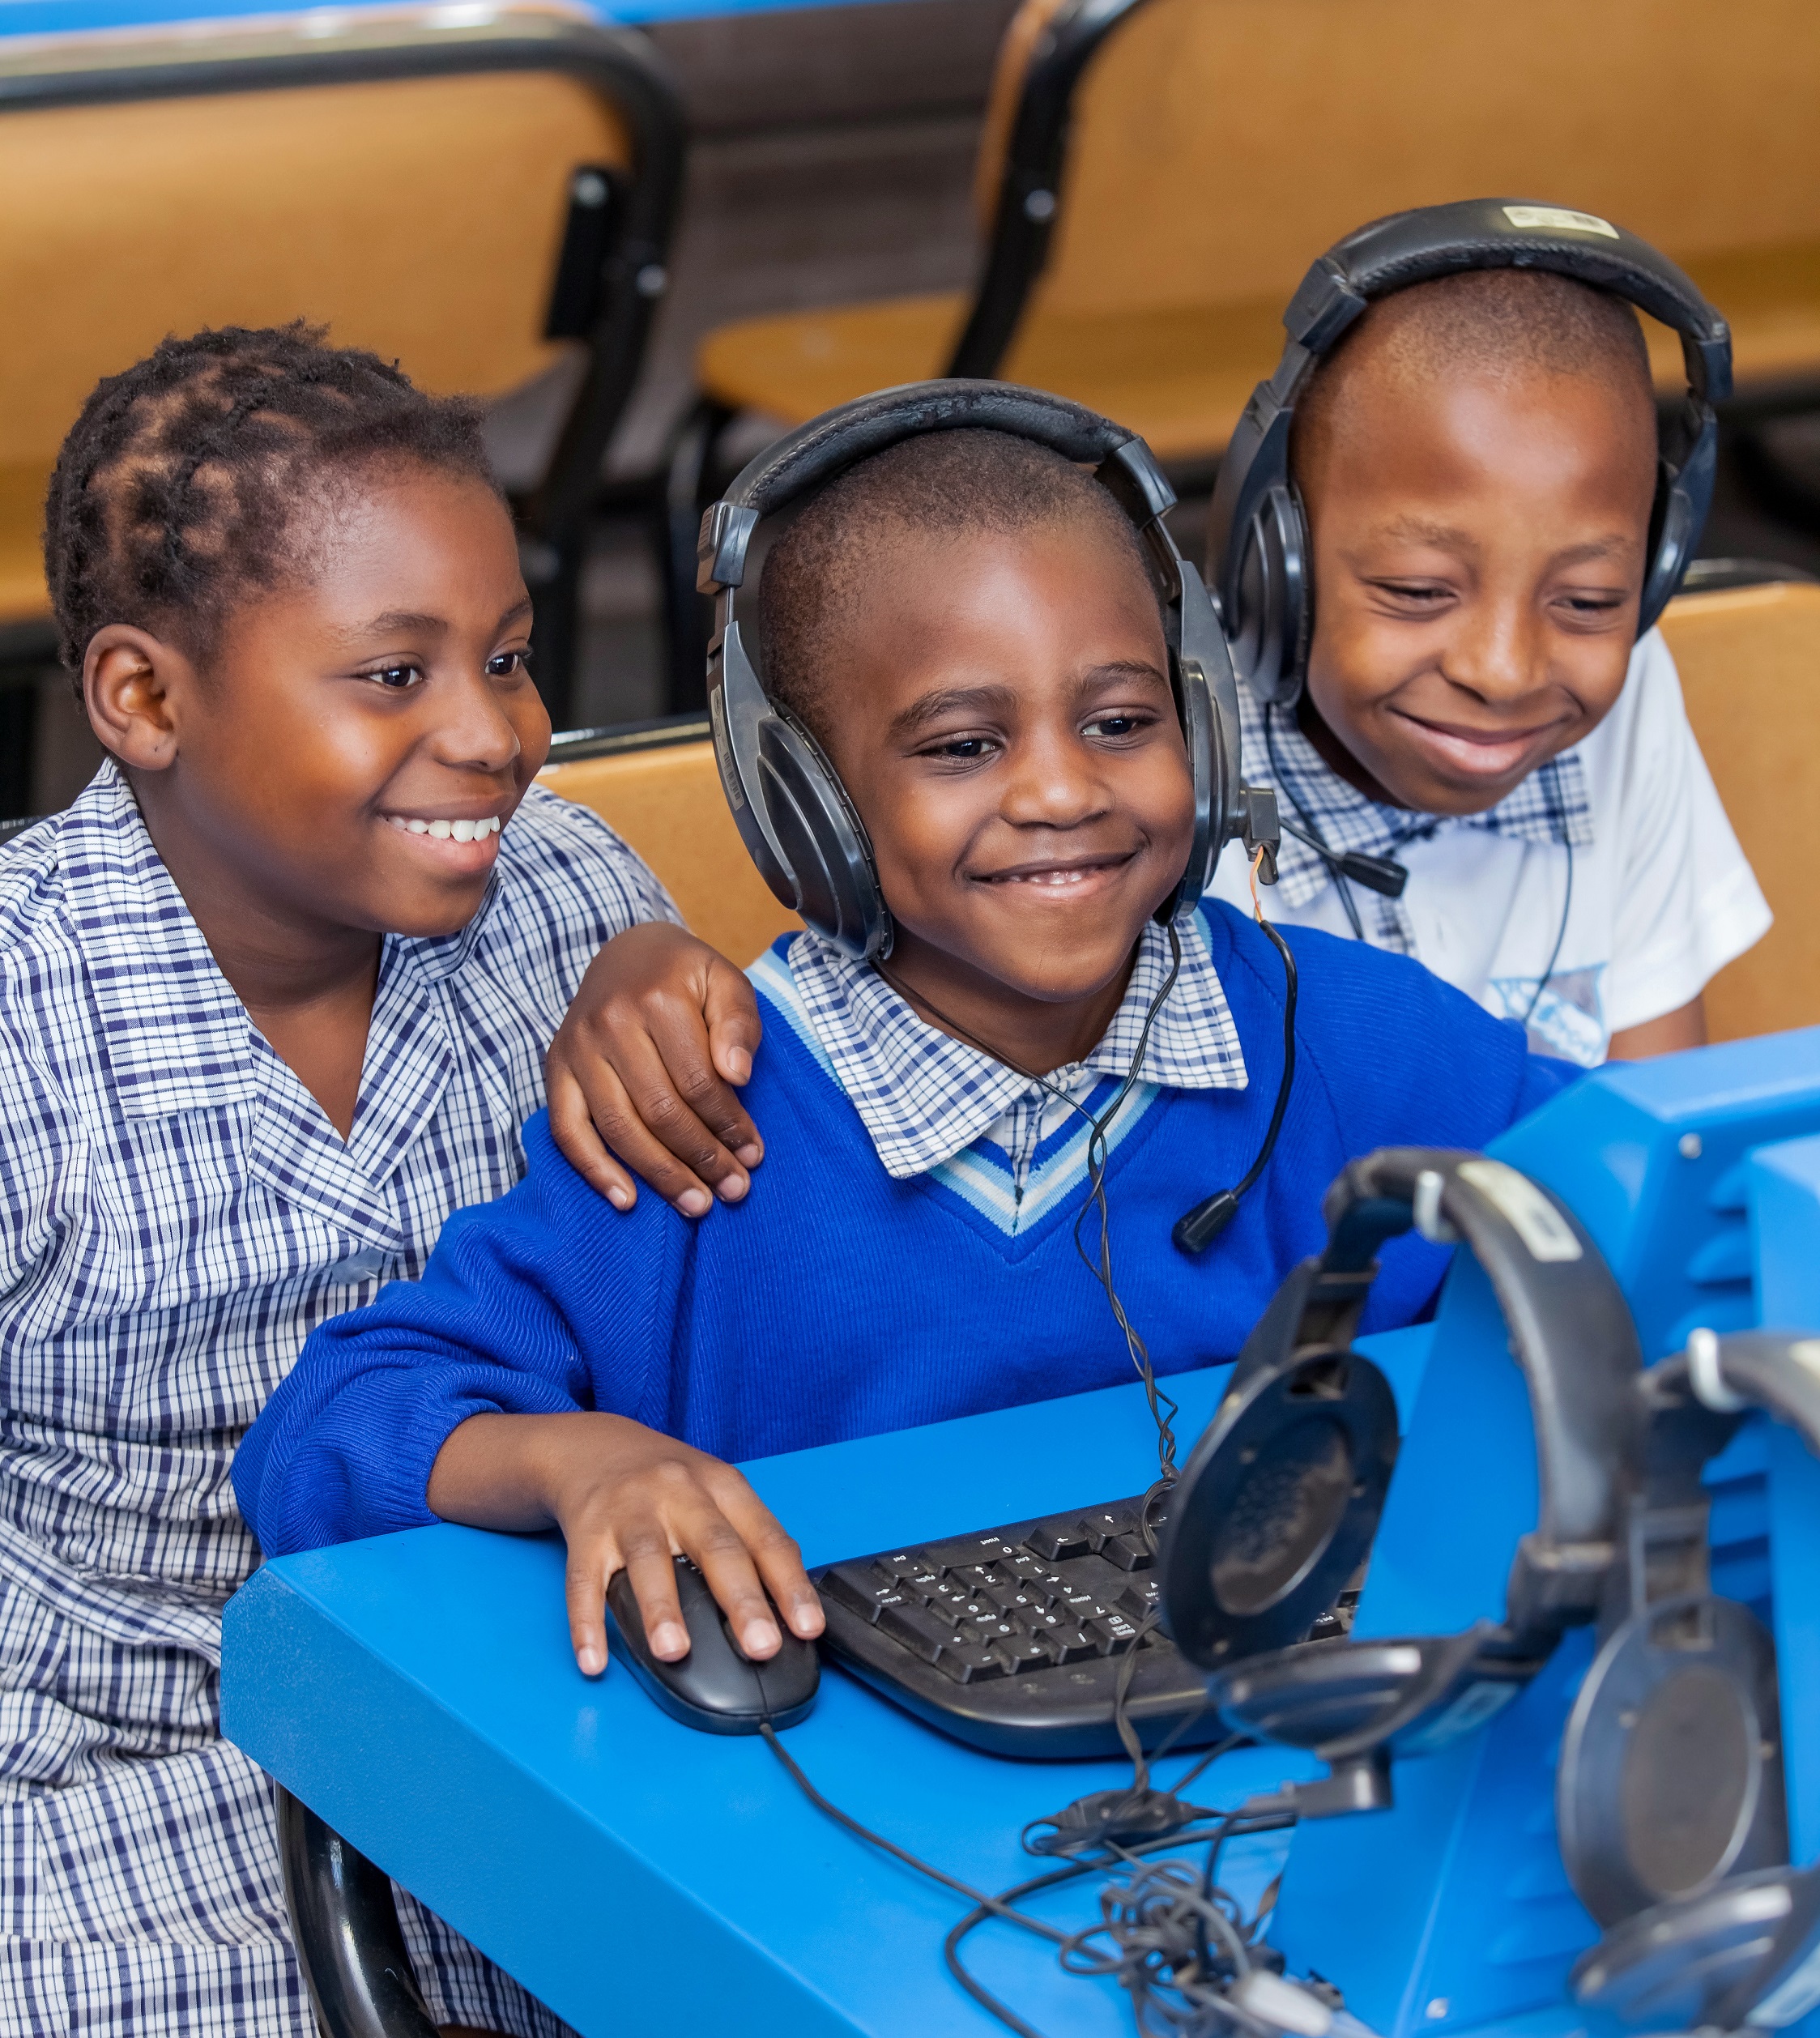 Children looking at computer in school classroom room in Africa.